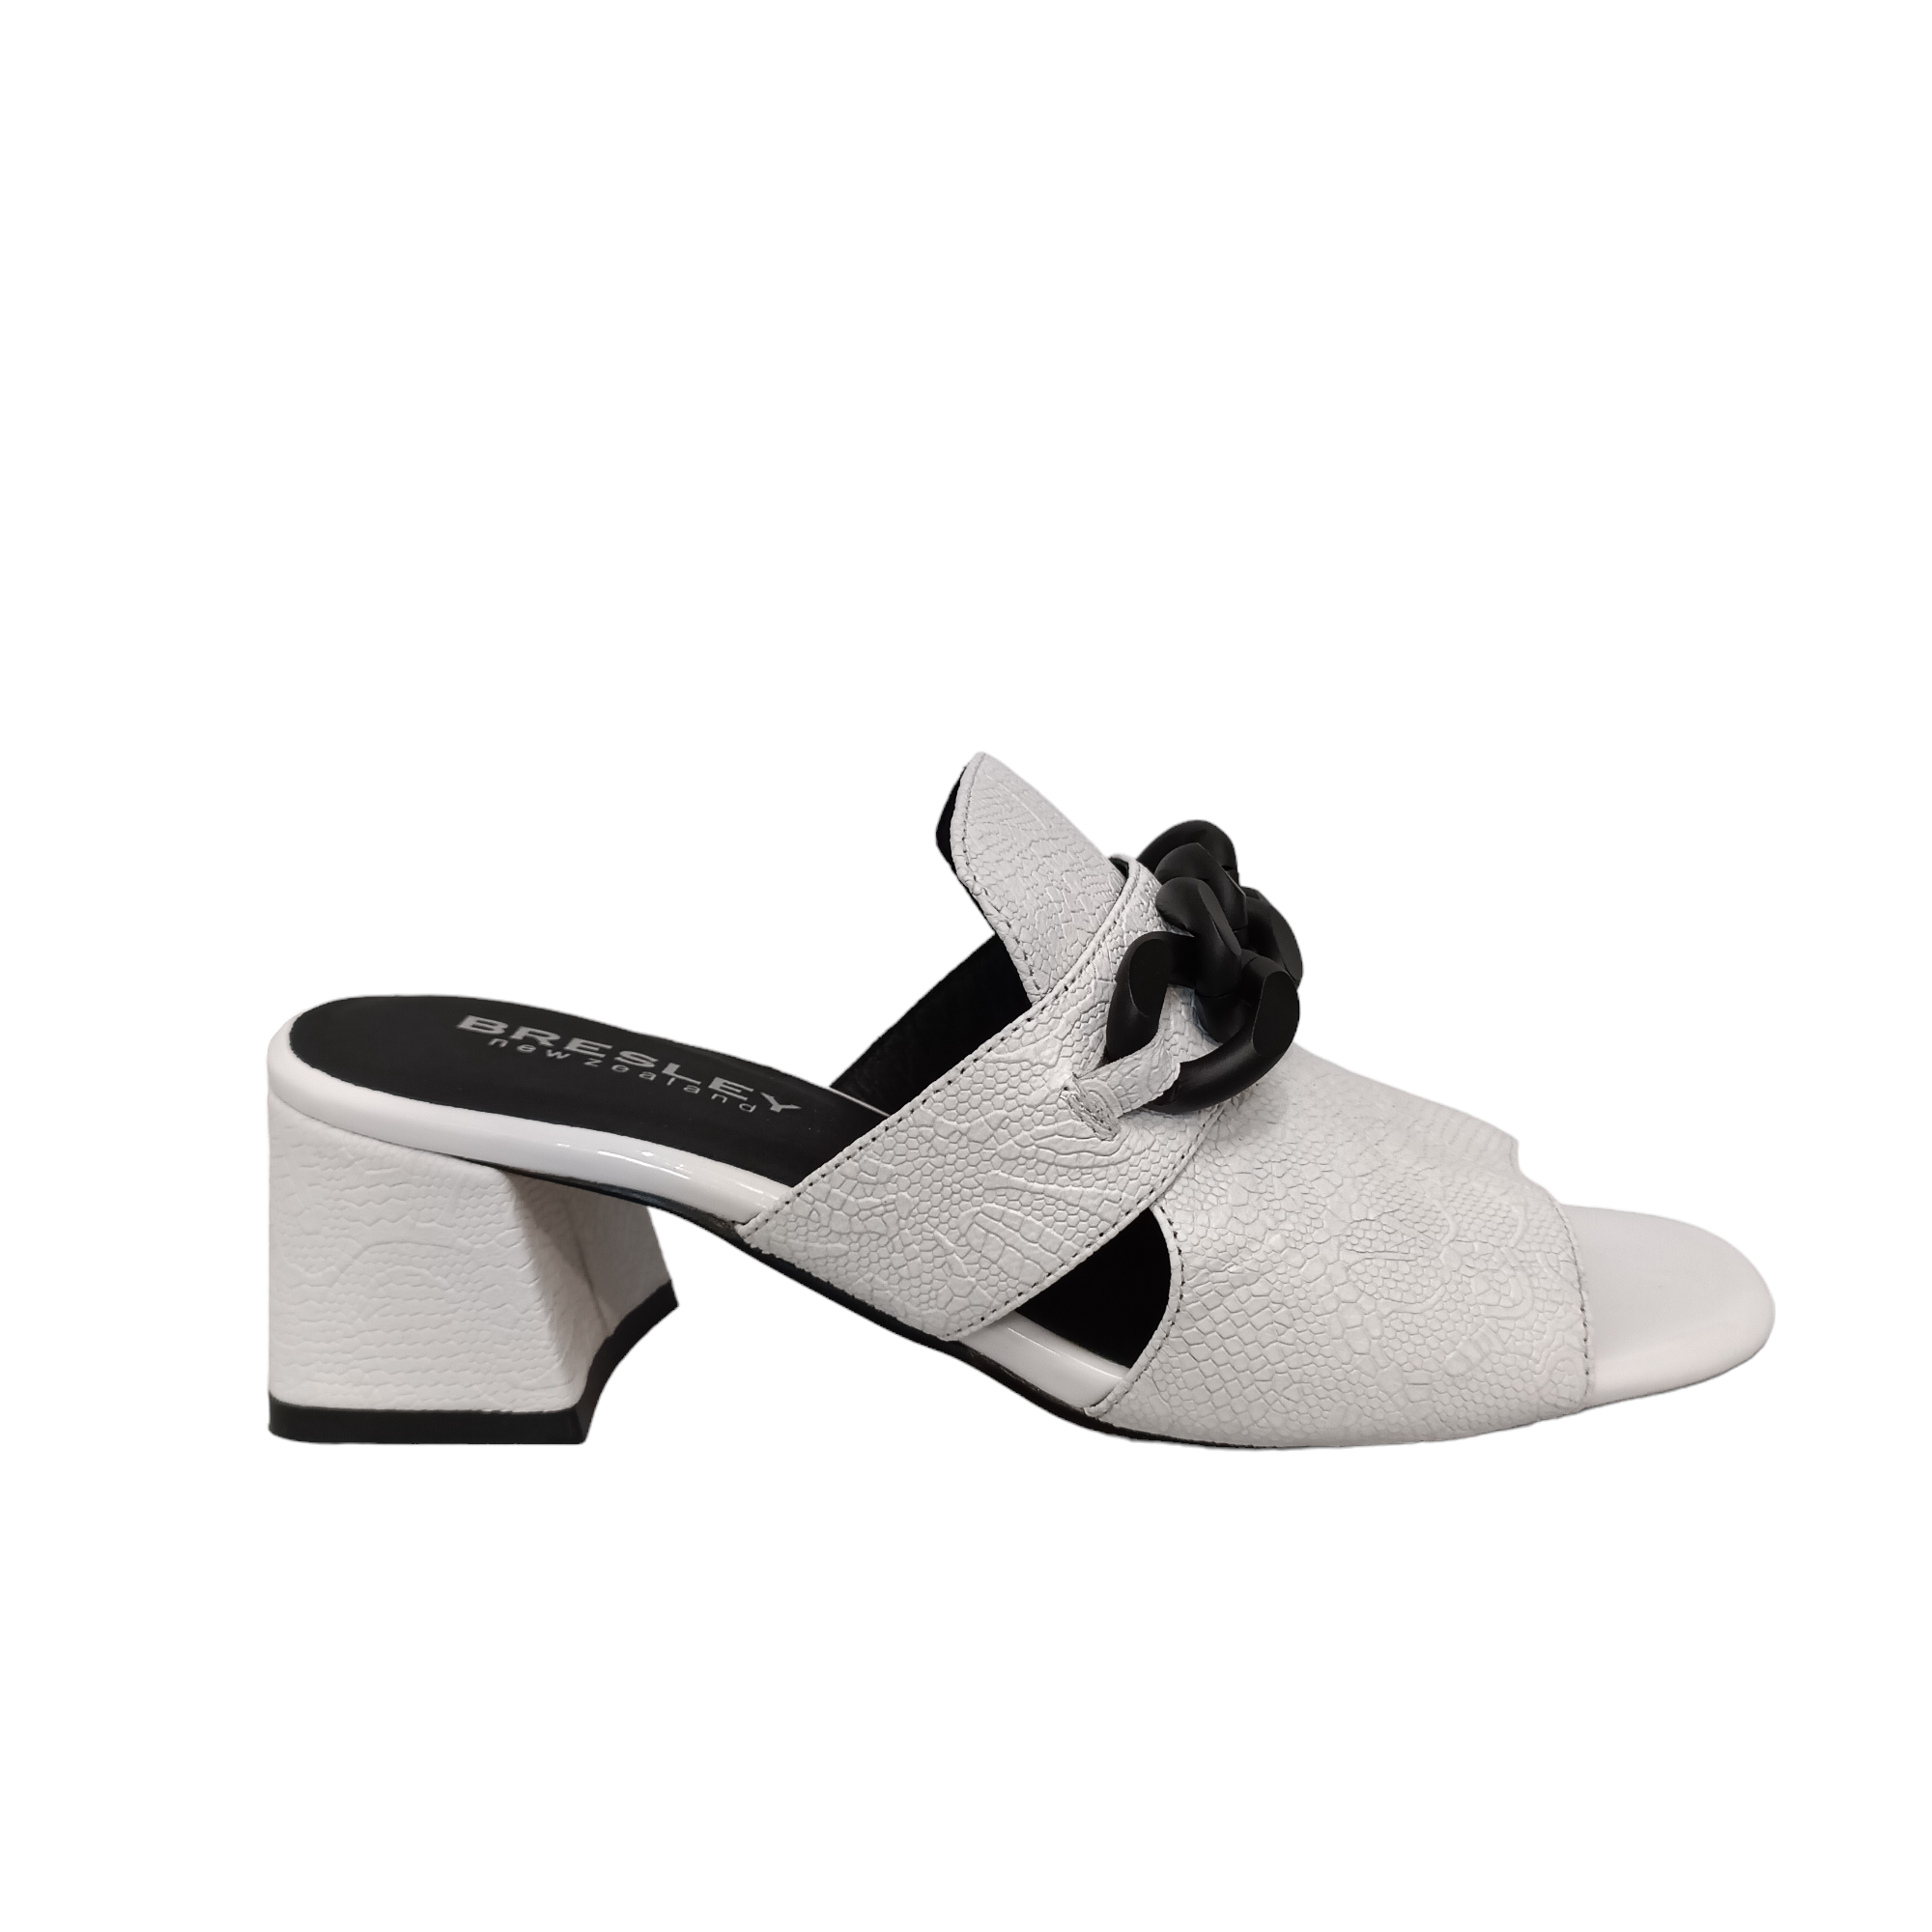 Adder - shoe&amp;me - Bresley - Slide - Heels, Slides/Scuffs, Summer, Womens